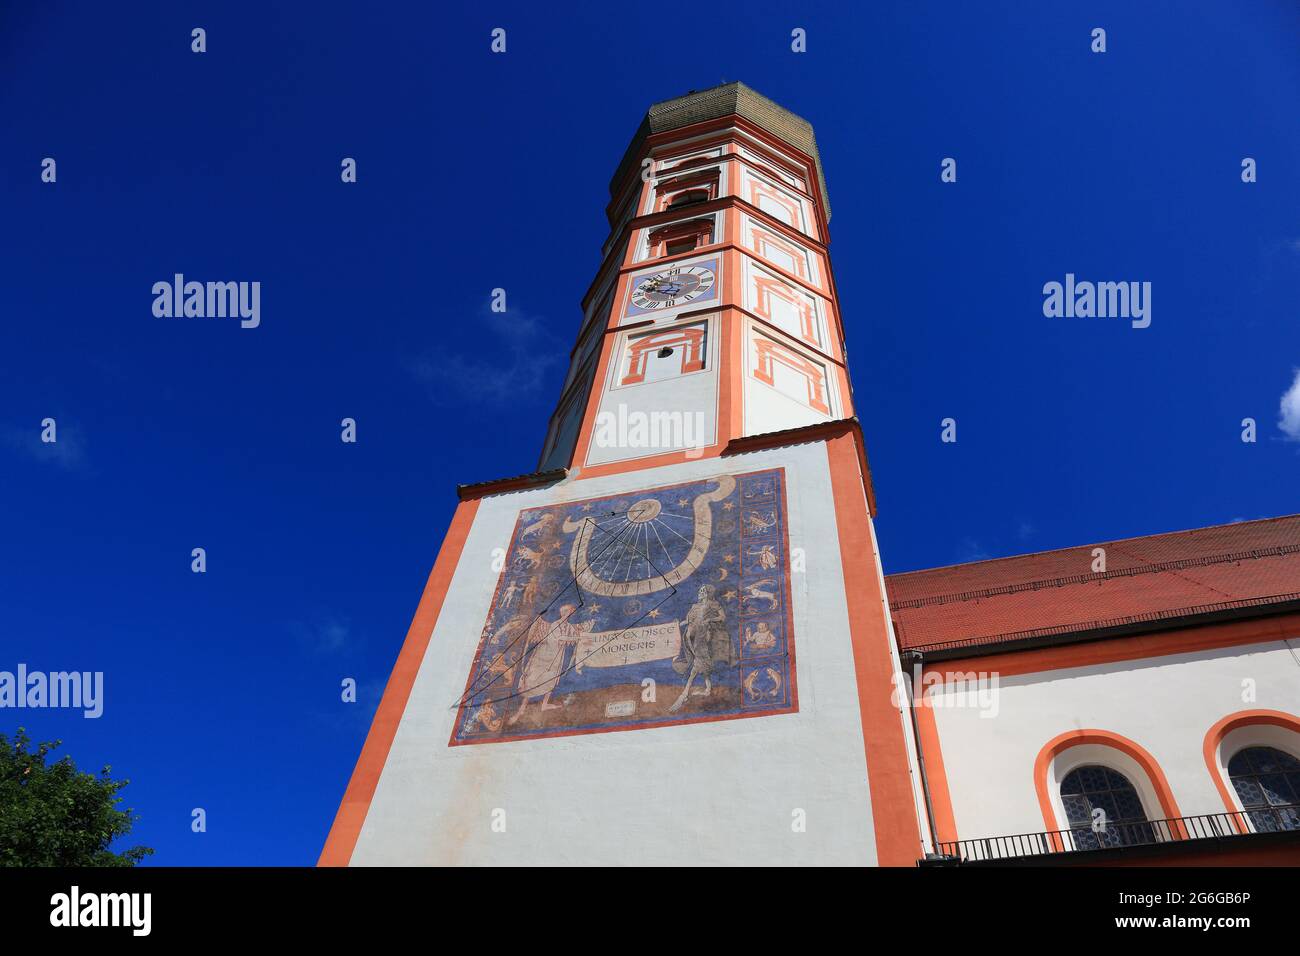 Sonnenuhr am Kirchturm, Kloster Andechs ist heute Teil der Benediktinerabtei Sankt Bonifaz in München, die Benediktinermönche auf dem Heiligen Berg Ba Stock Photo